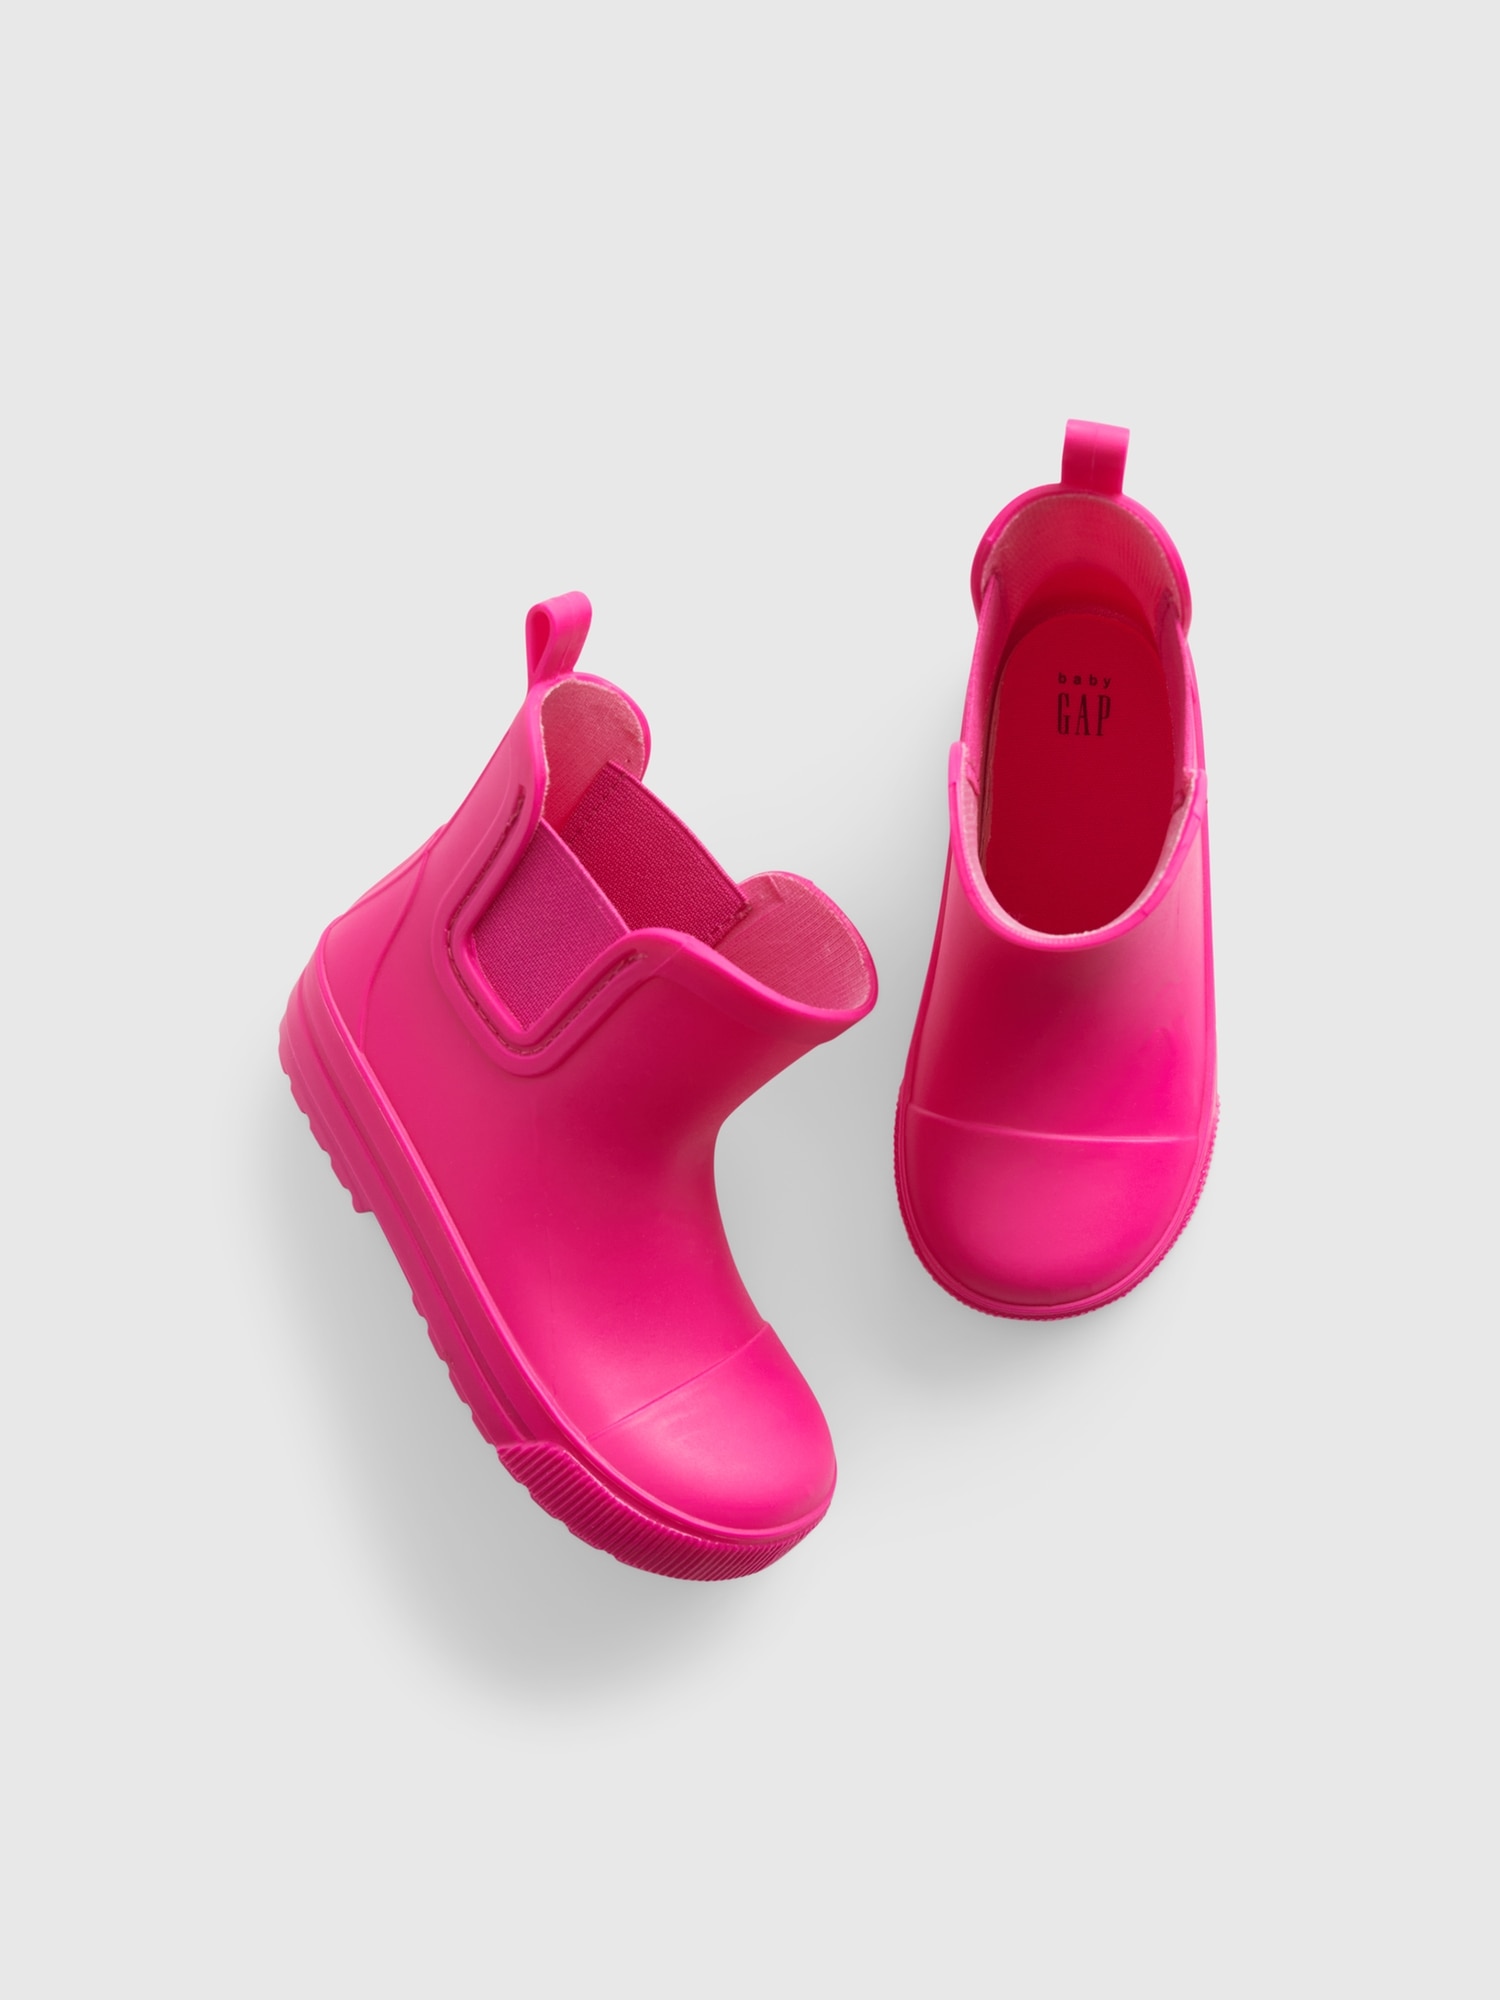 Gap Babies' Toddler Neon Rain Boot In Super Pink Neon